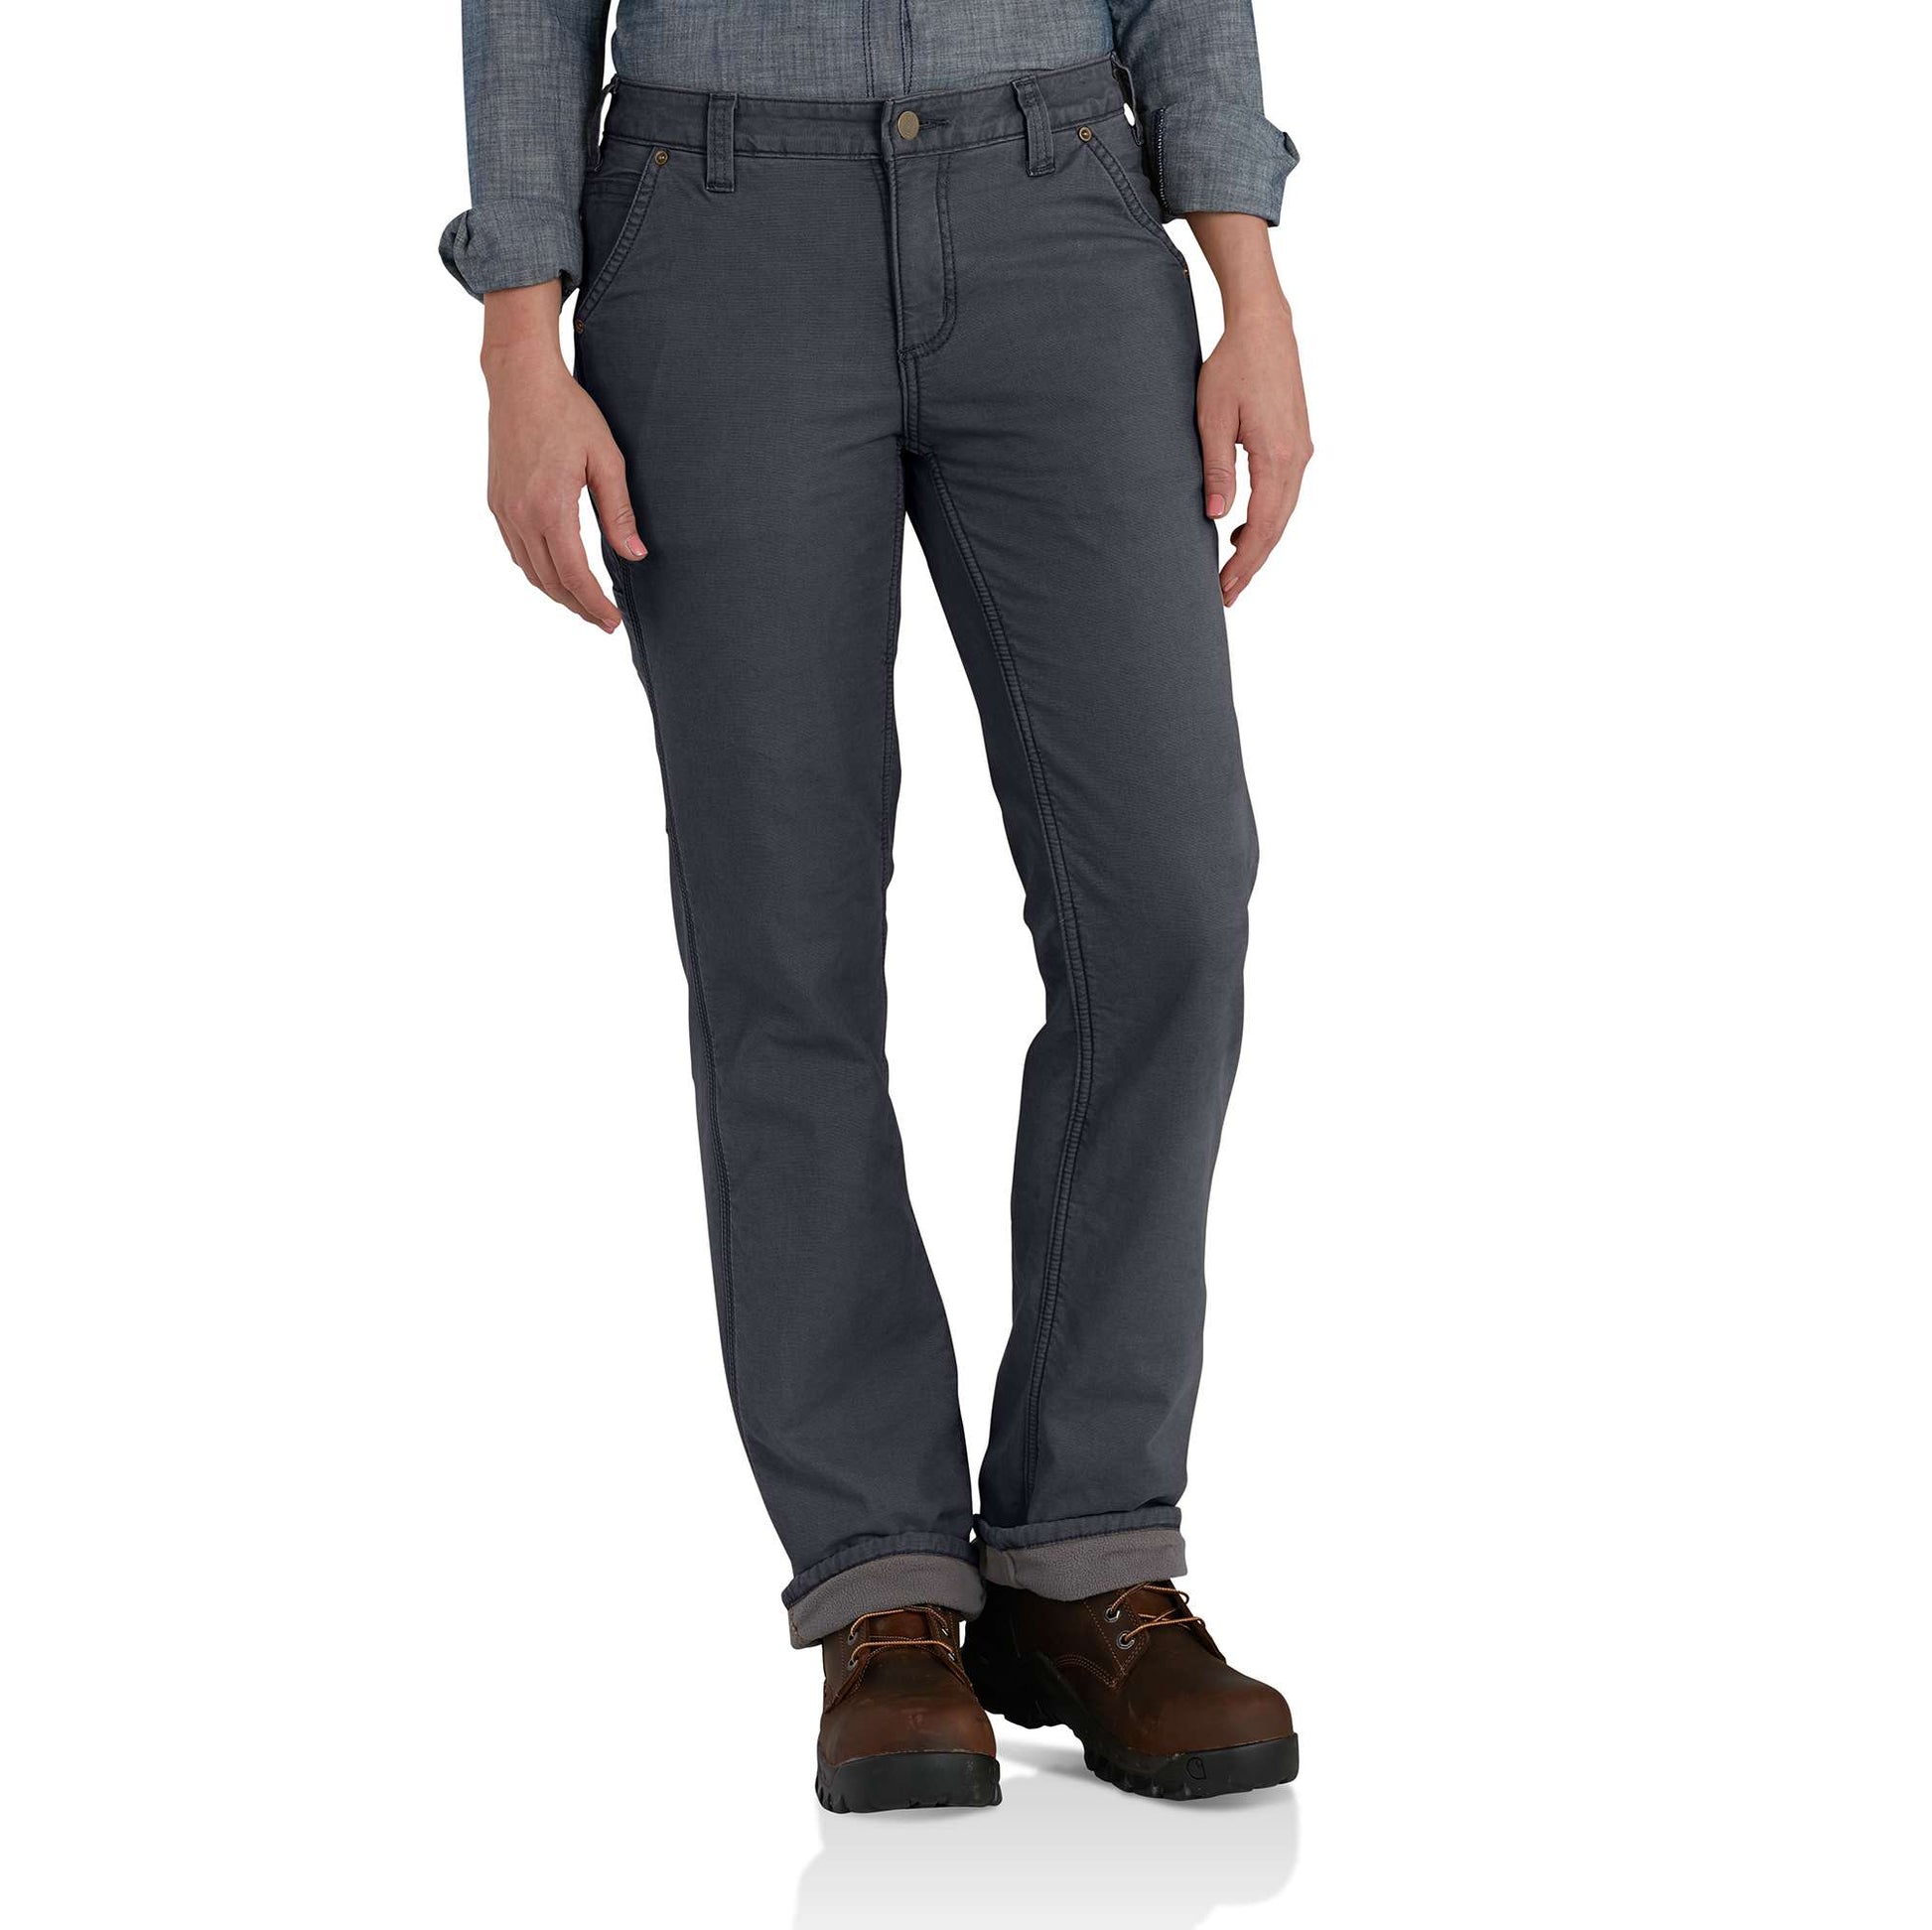 Carhartt Pants, fleece lined jeans